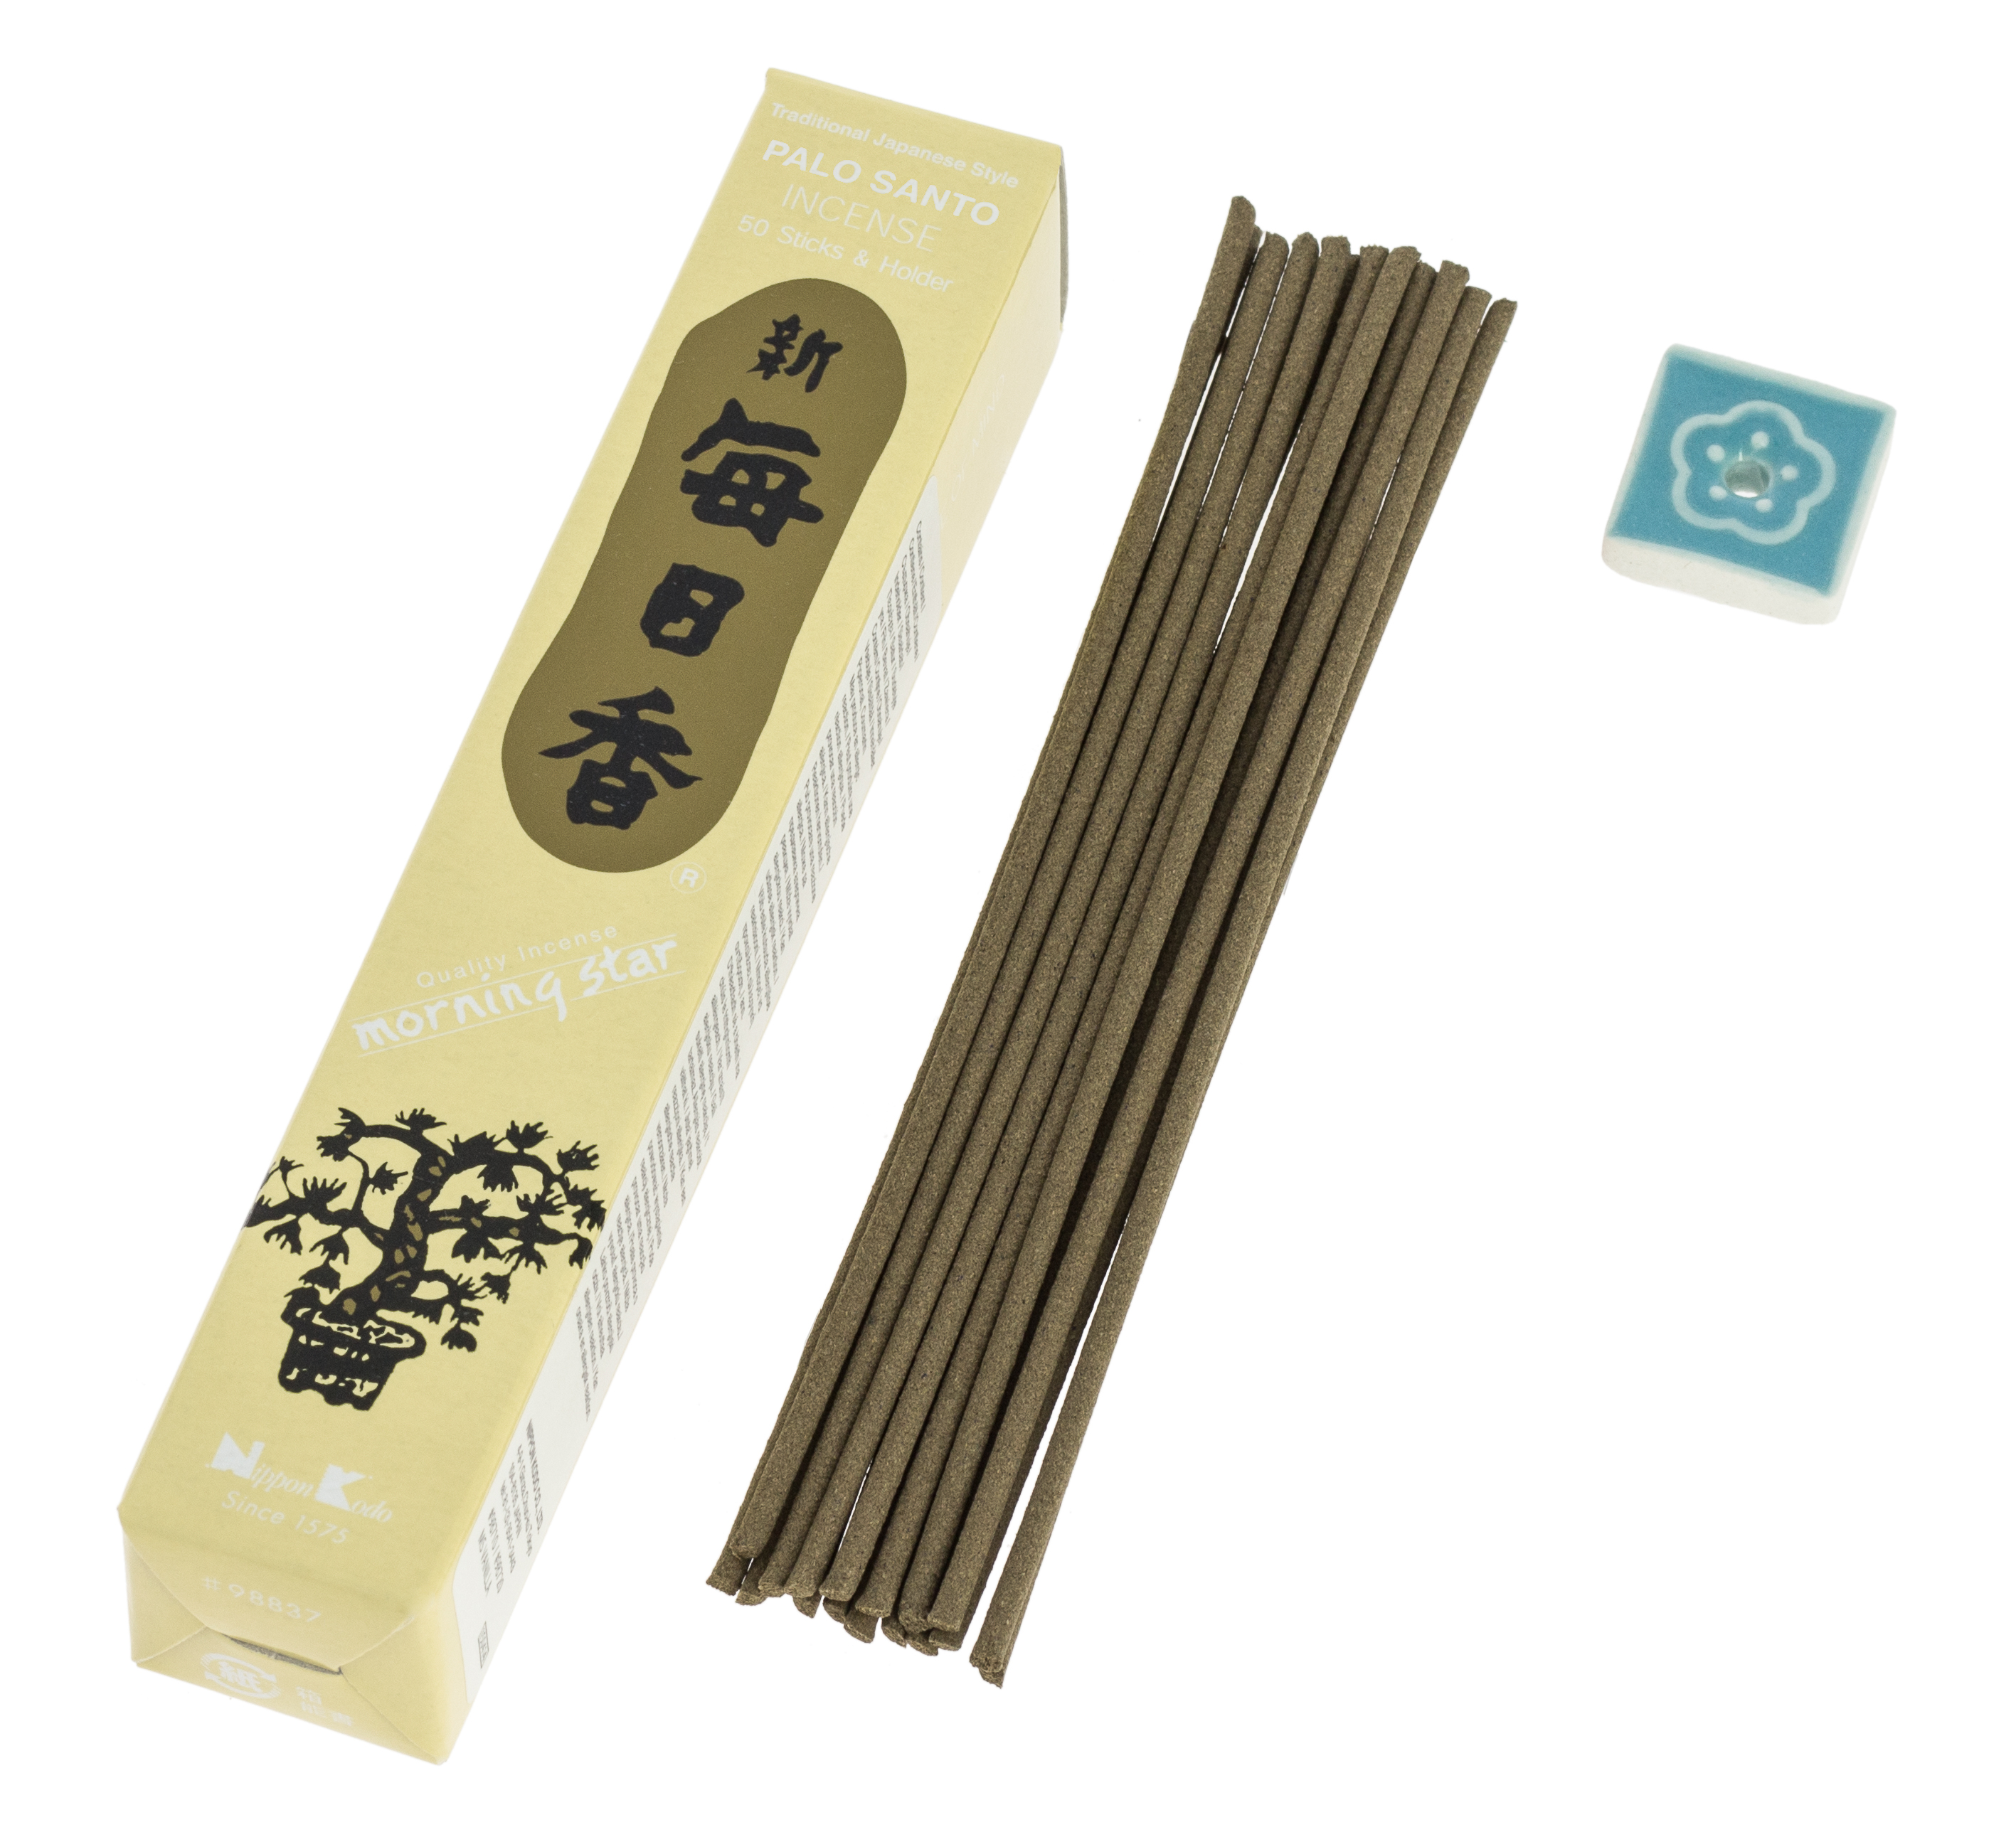 Caja de 50 varitas de incienso japonés con su soporte de cerámica